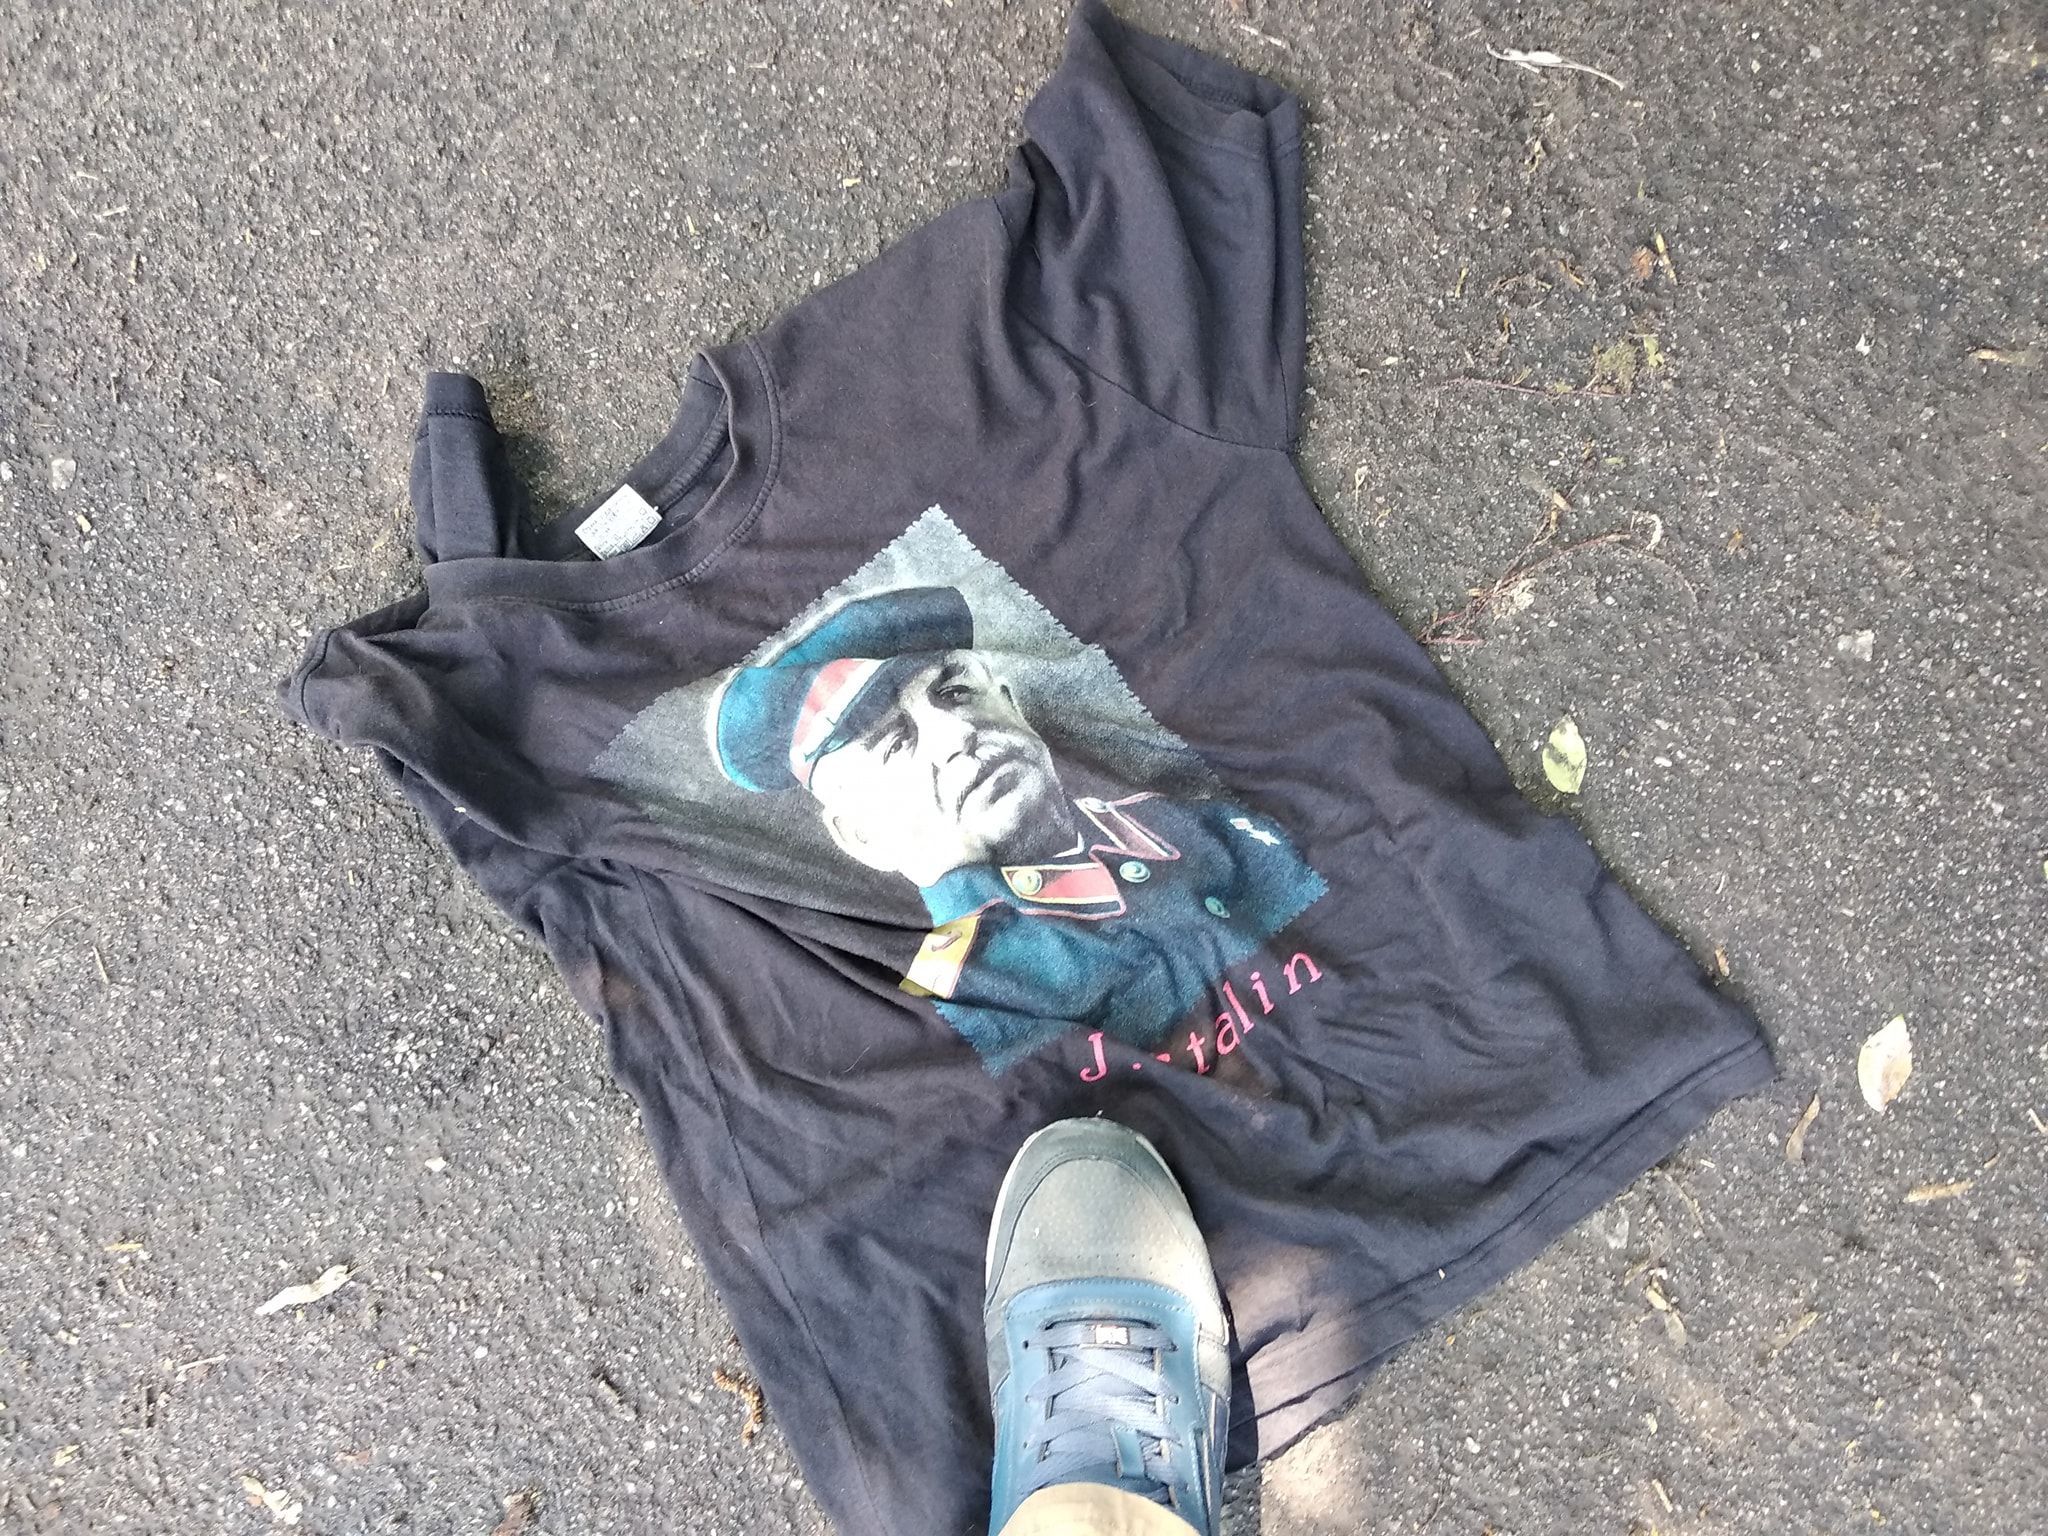 Києвом розгулював чоловік у футболці з портретом Сталіна: фаната вождя СРСР провчили у метро